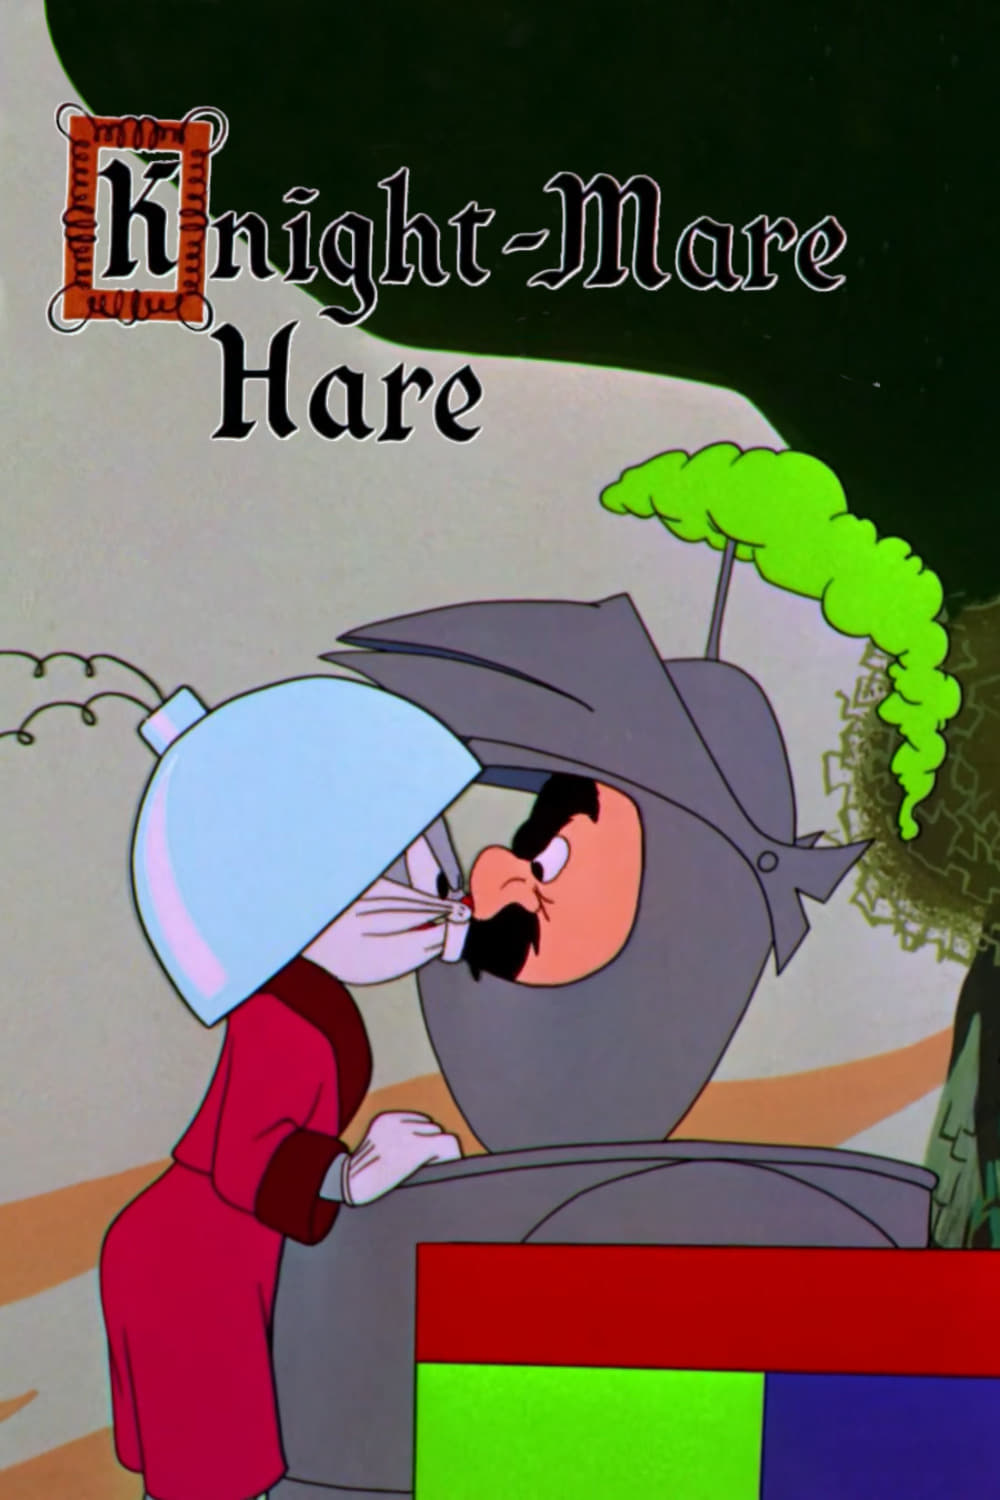 Knight-Mare Hare (1955)